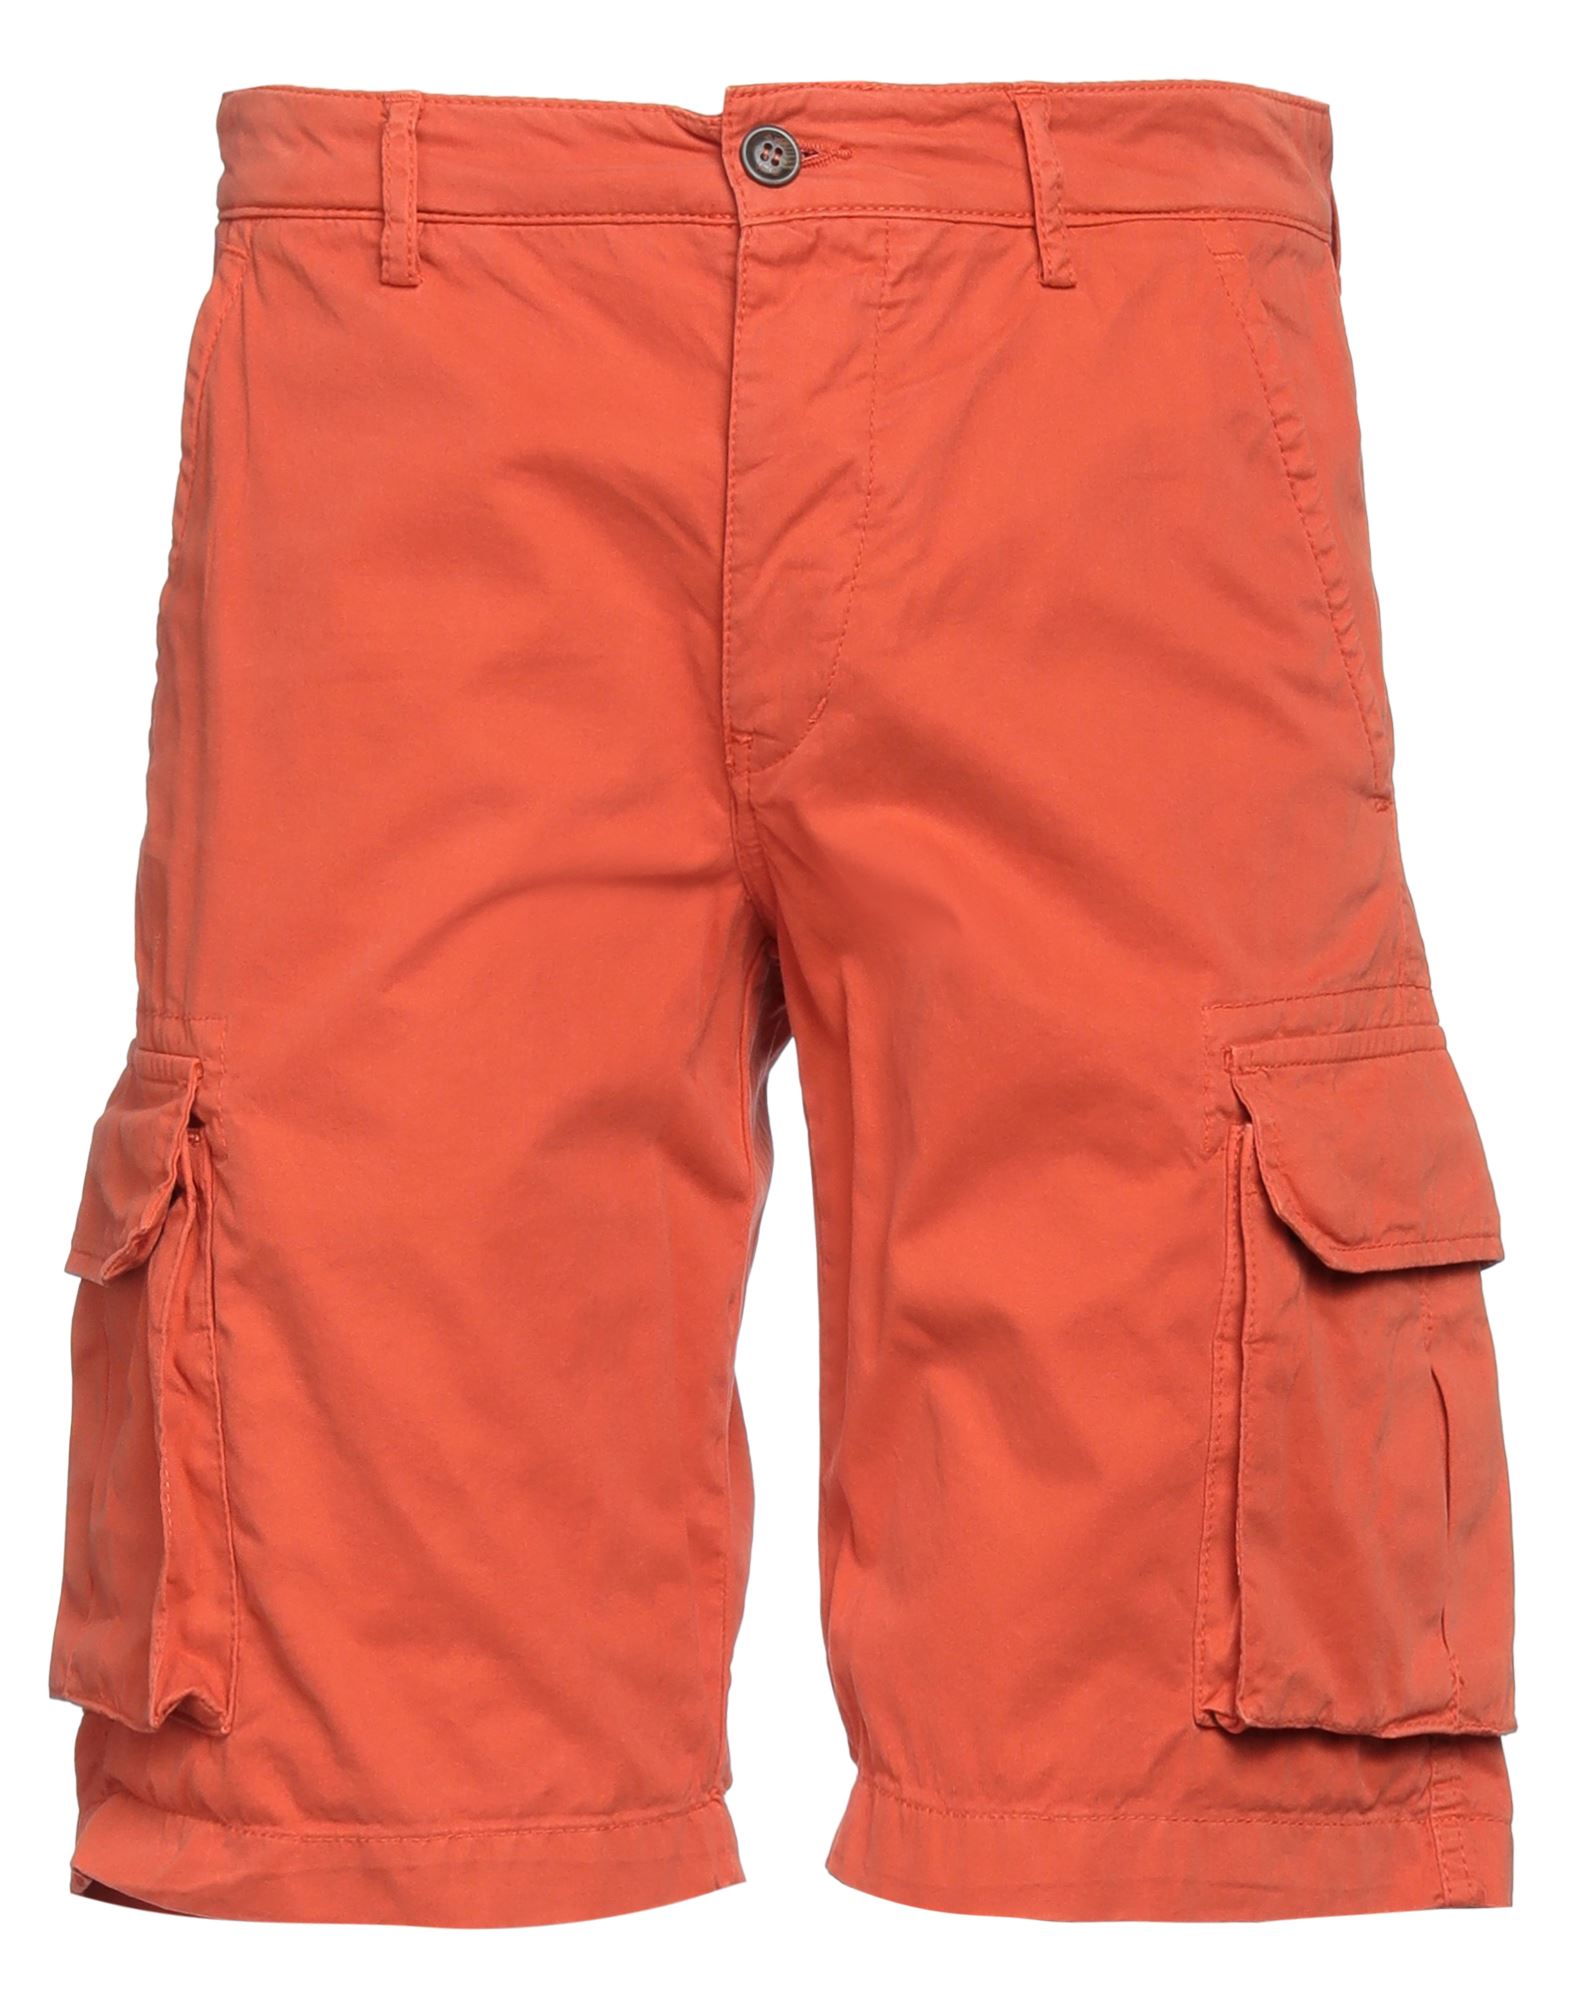 40weft Man Shorts & Bermuda Shorts Orange Size 28 Cotton